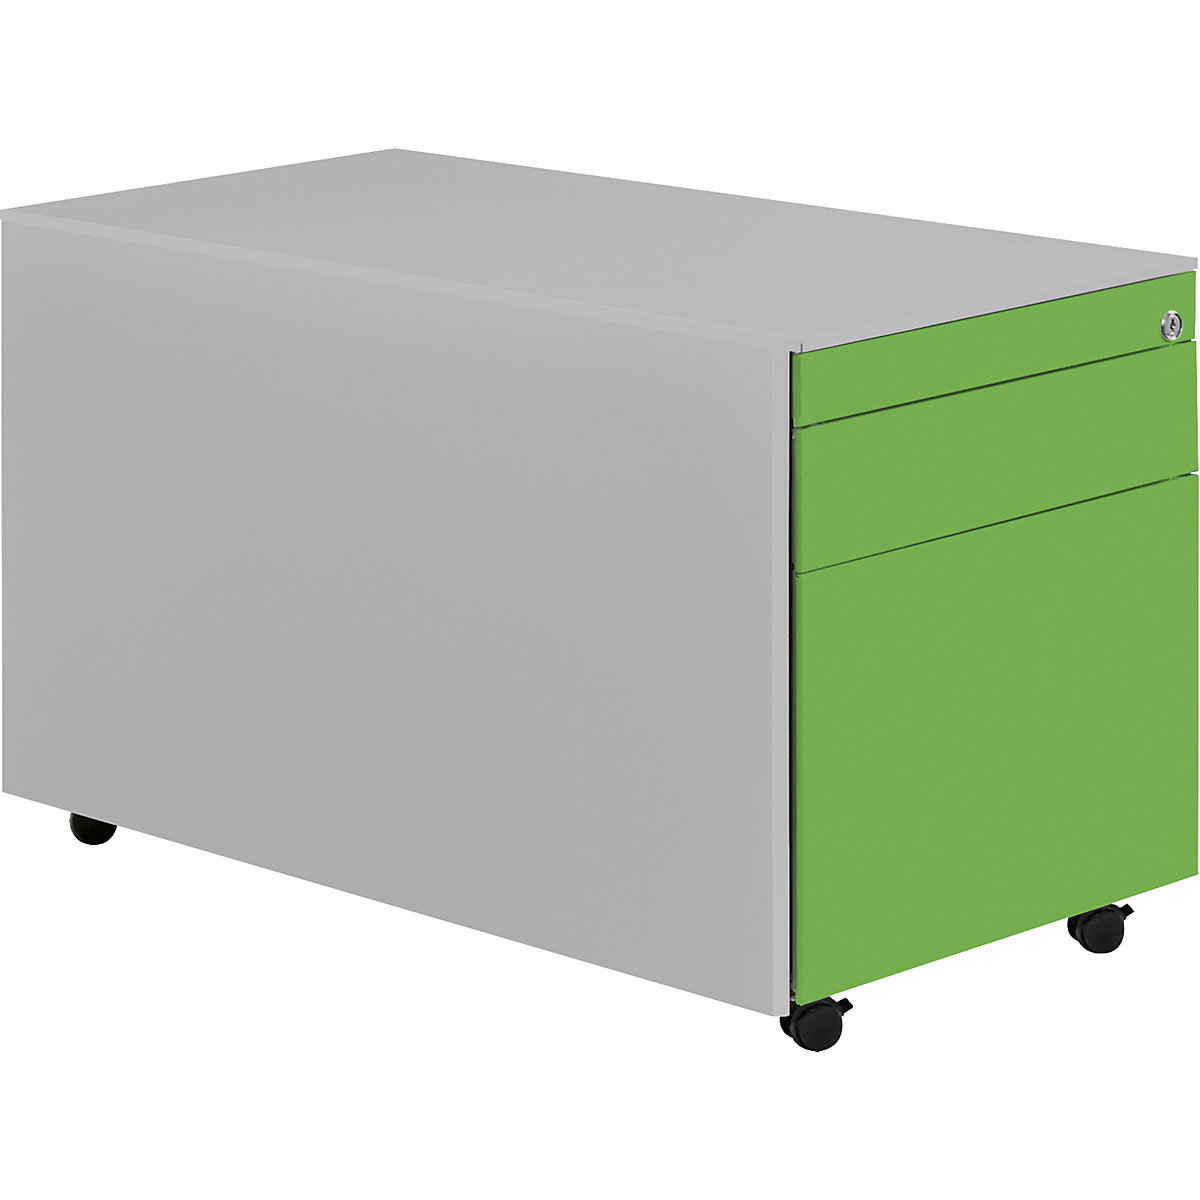 Casetieră cu sertare cu role – mauser, î. x ad. 520 x 800 mm, 1 sertar pentru materiale, 1 registratură suspendată, alb aluminiu / verde gălbui / alb aluminiu-6